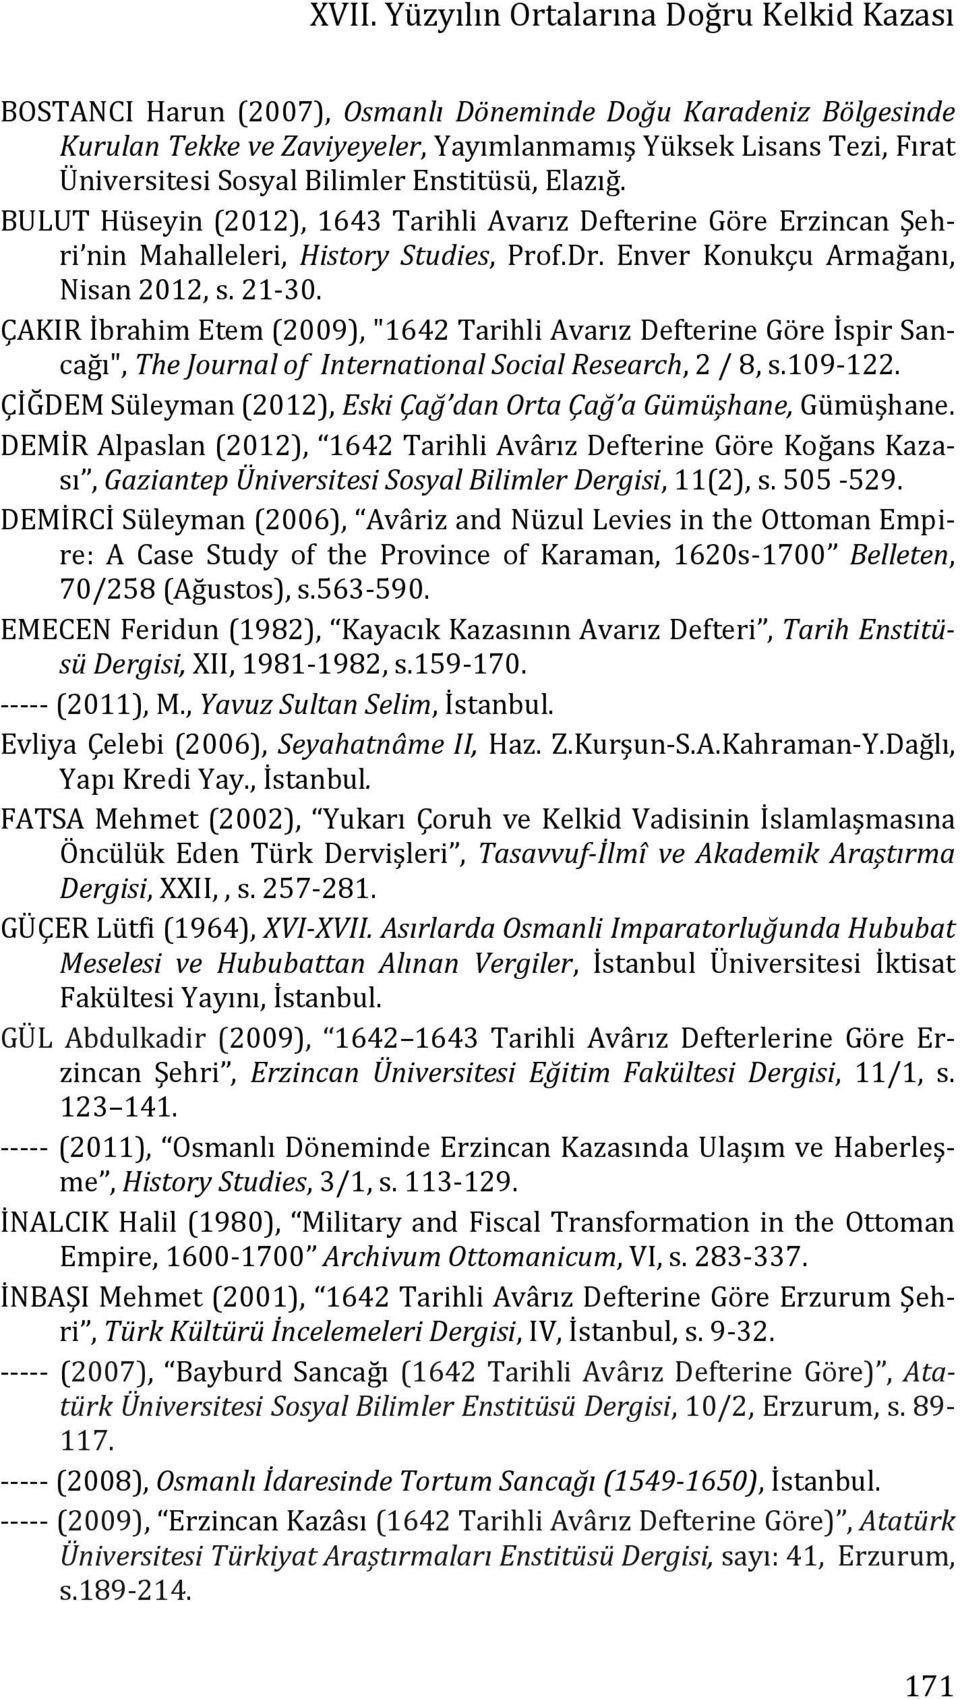 ÇAKIR İbrahim Etem (2009), "1642 Tarihli Avarız Defterine Göre İspir Sancağı", The Journal of International Social Research, 2 / 8, s.109-122.